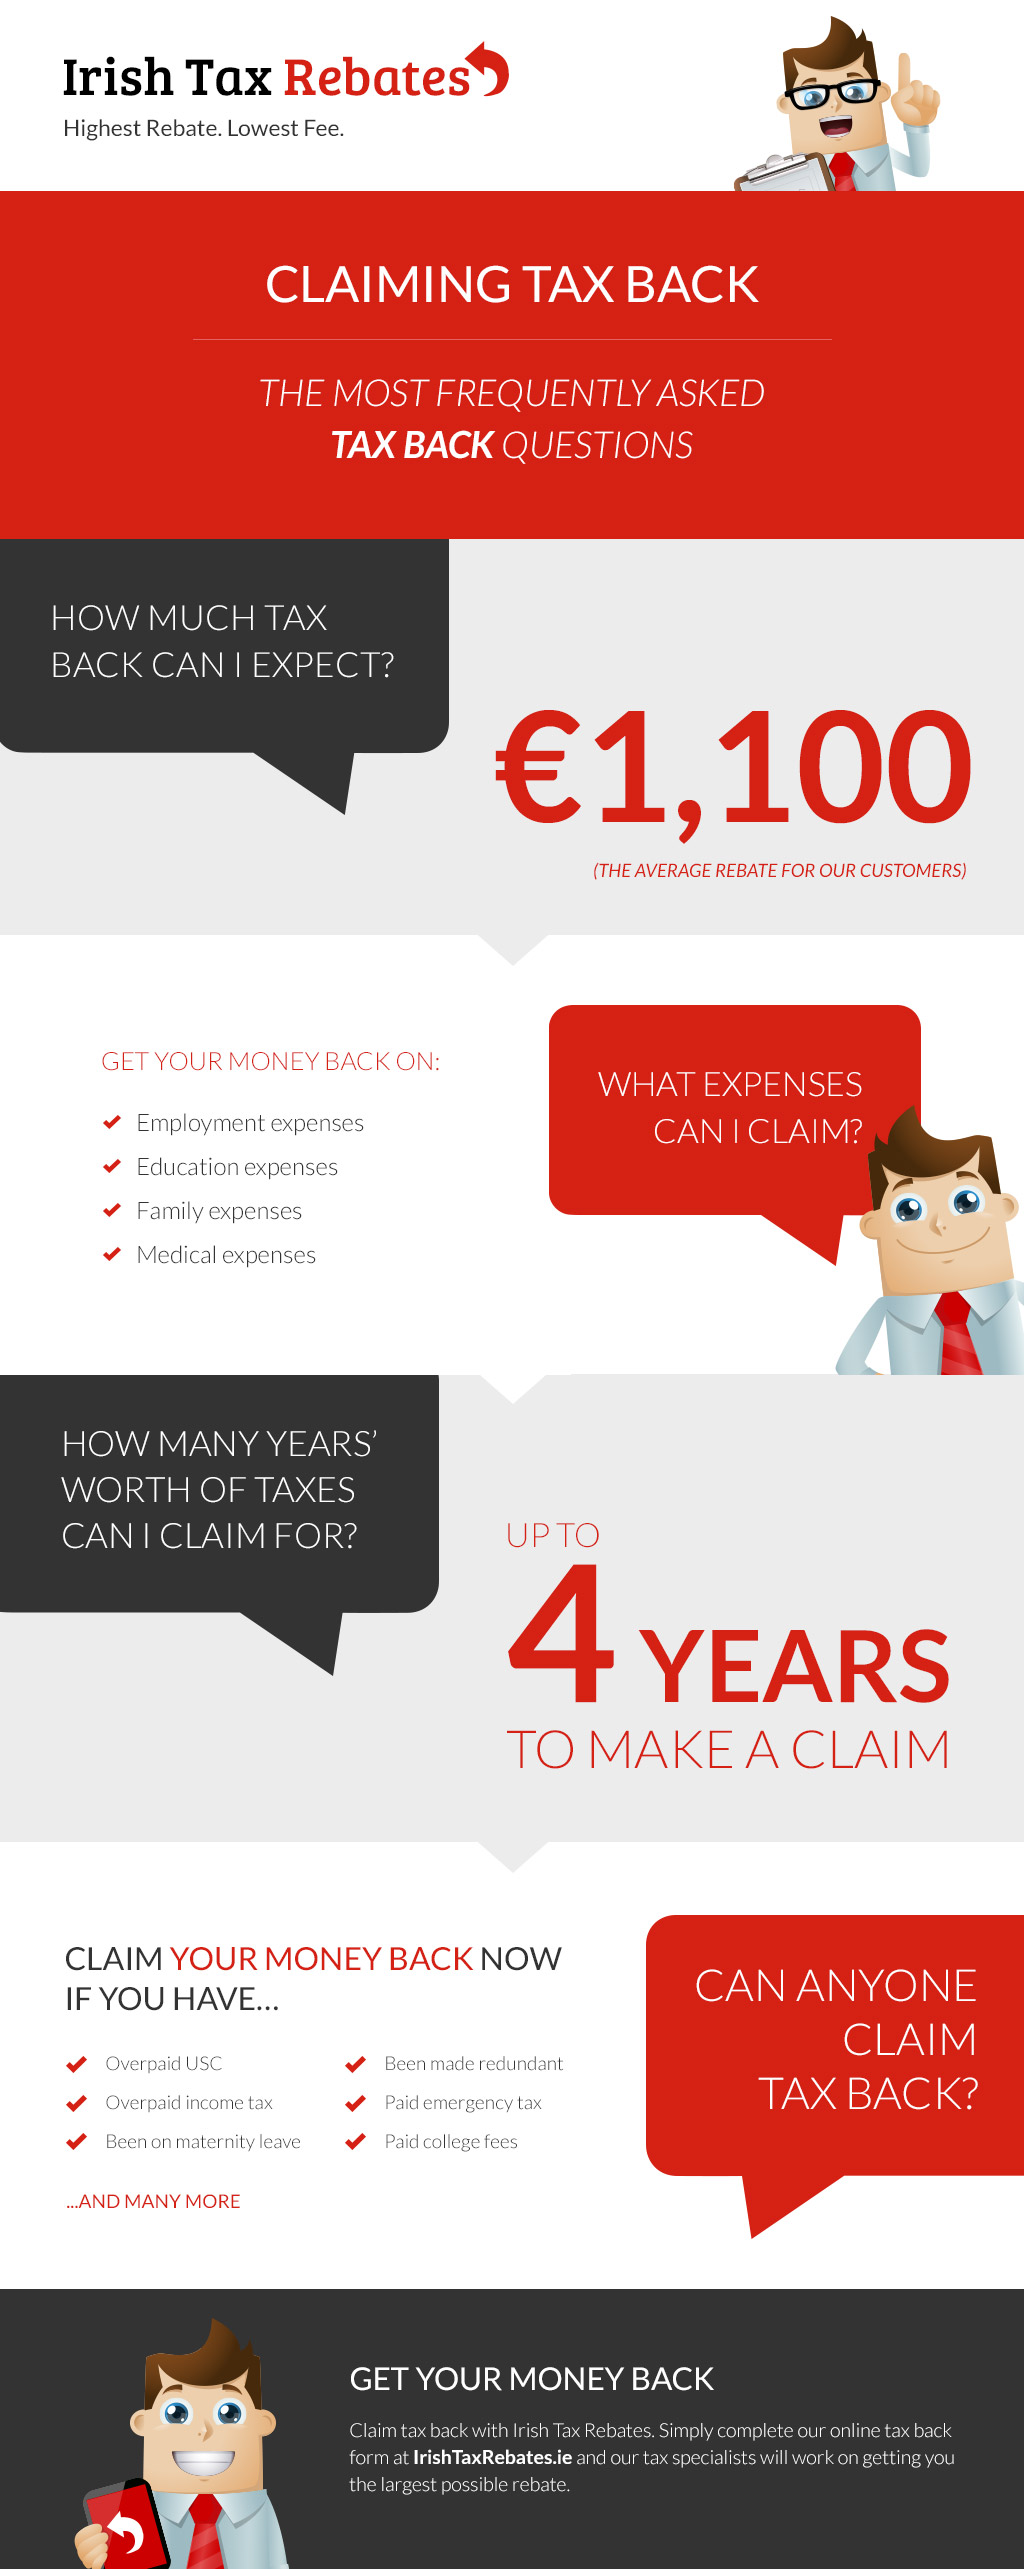 Claiming Tax Back FAQ s Irish Tax Rebates